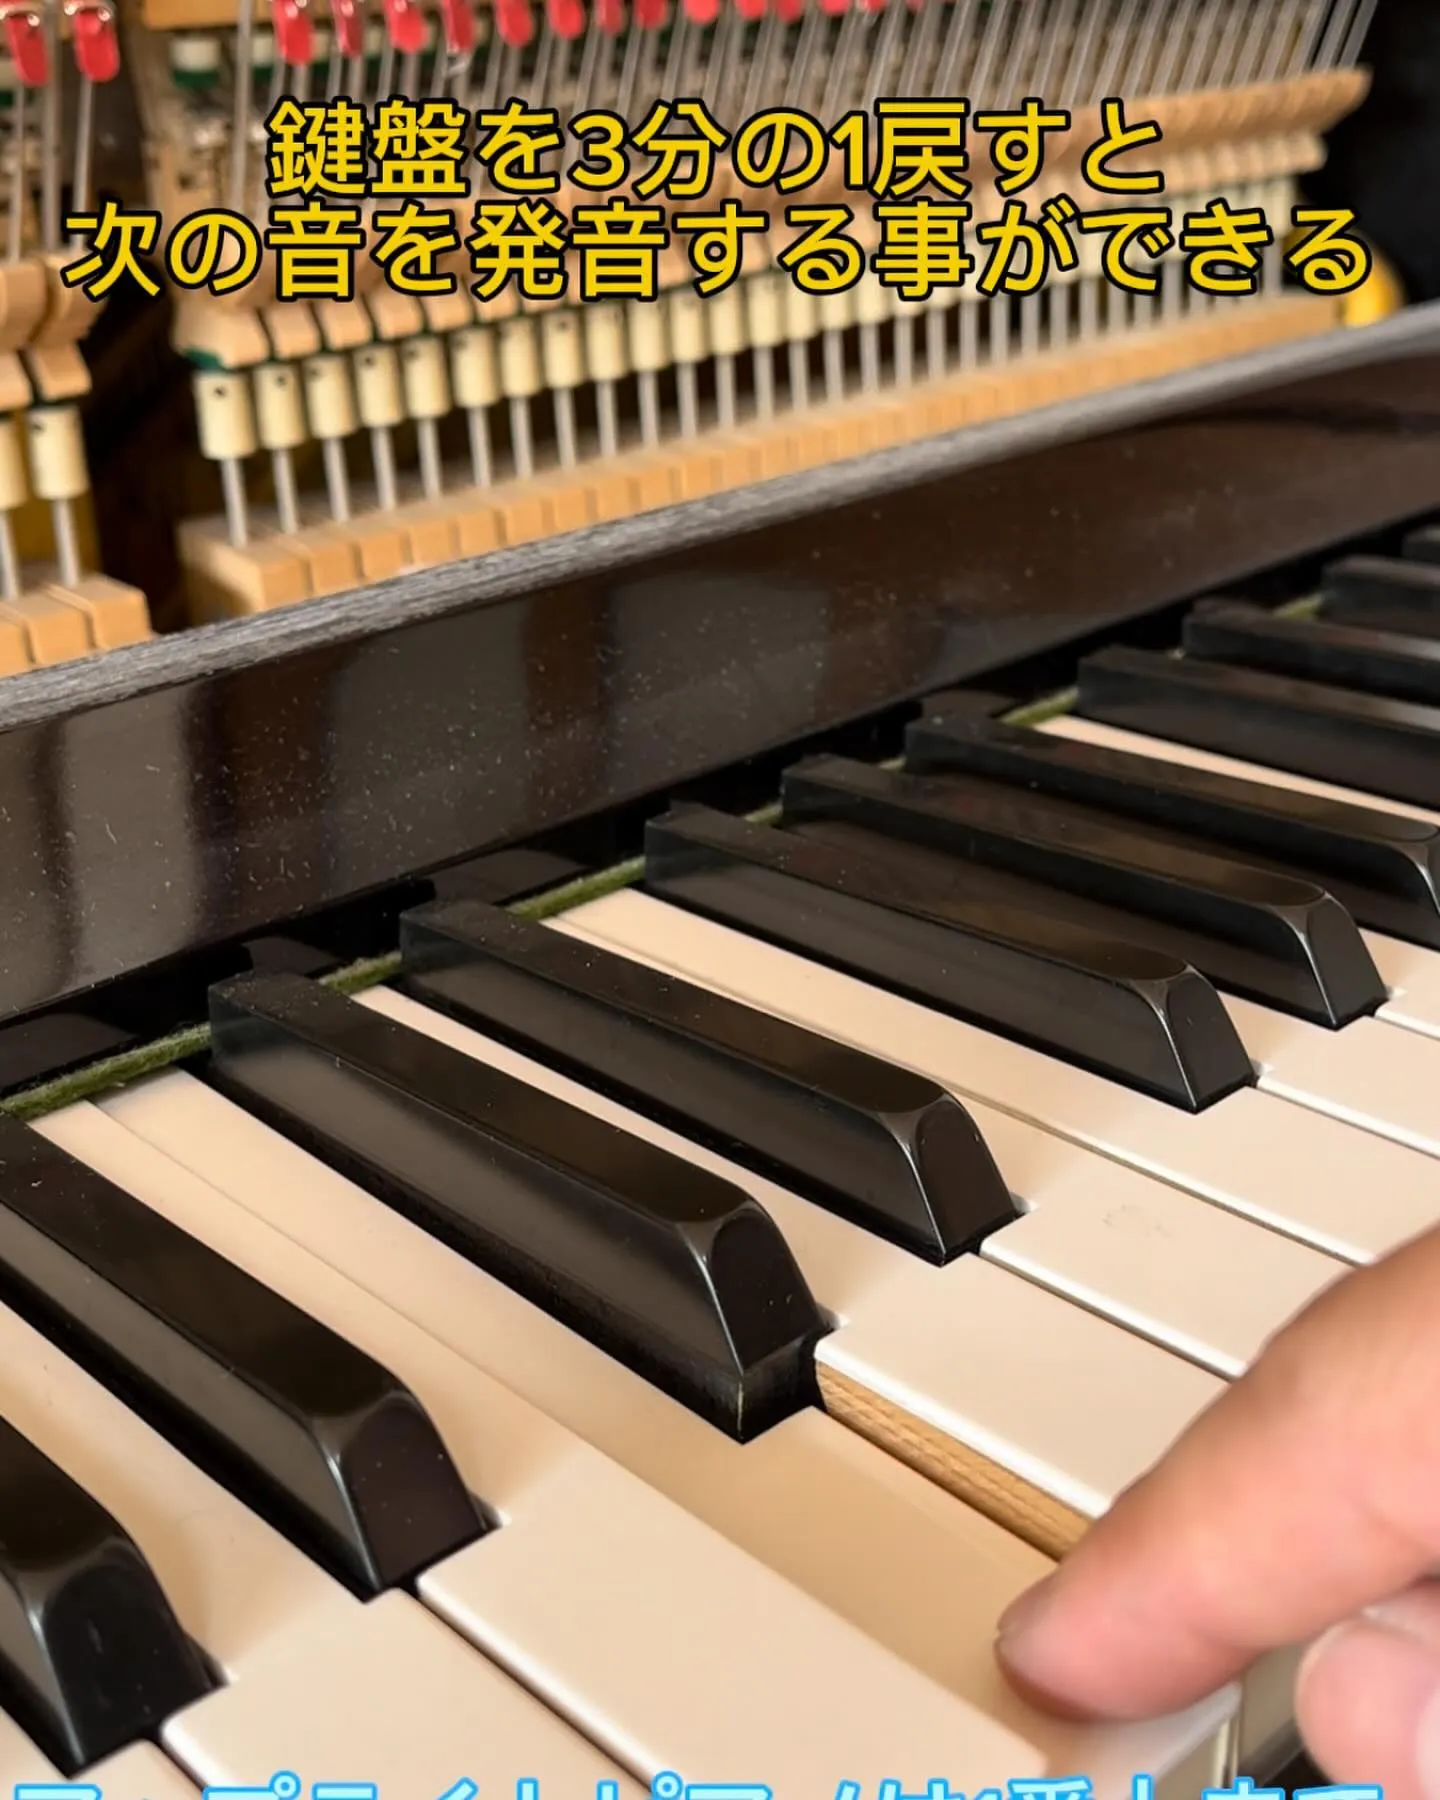 グランフィールピアノ調律と機能紹介